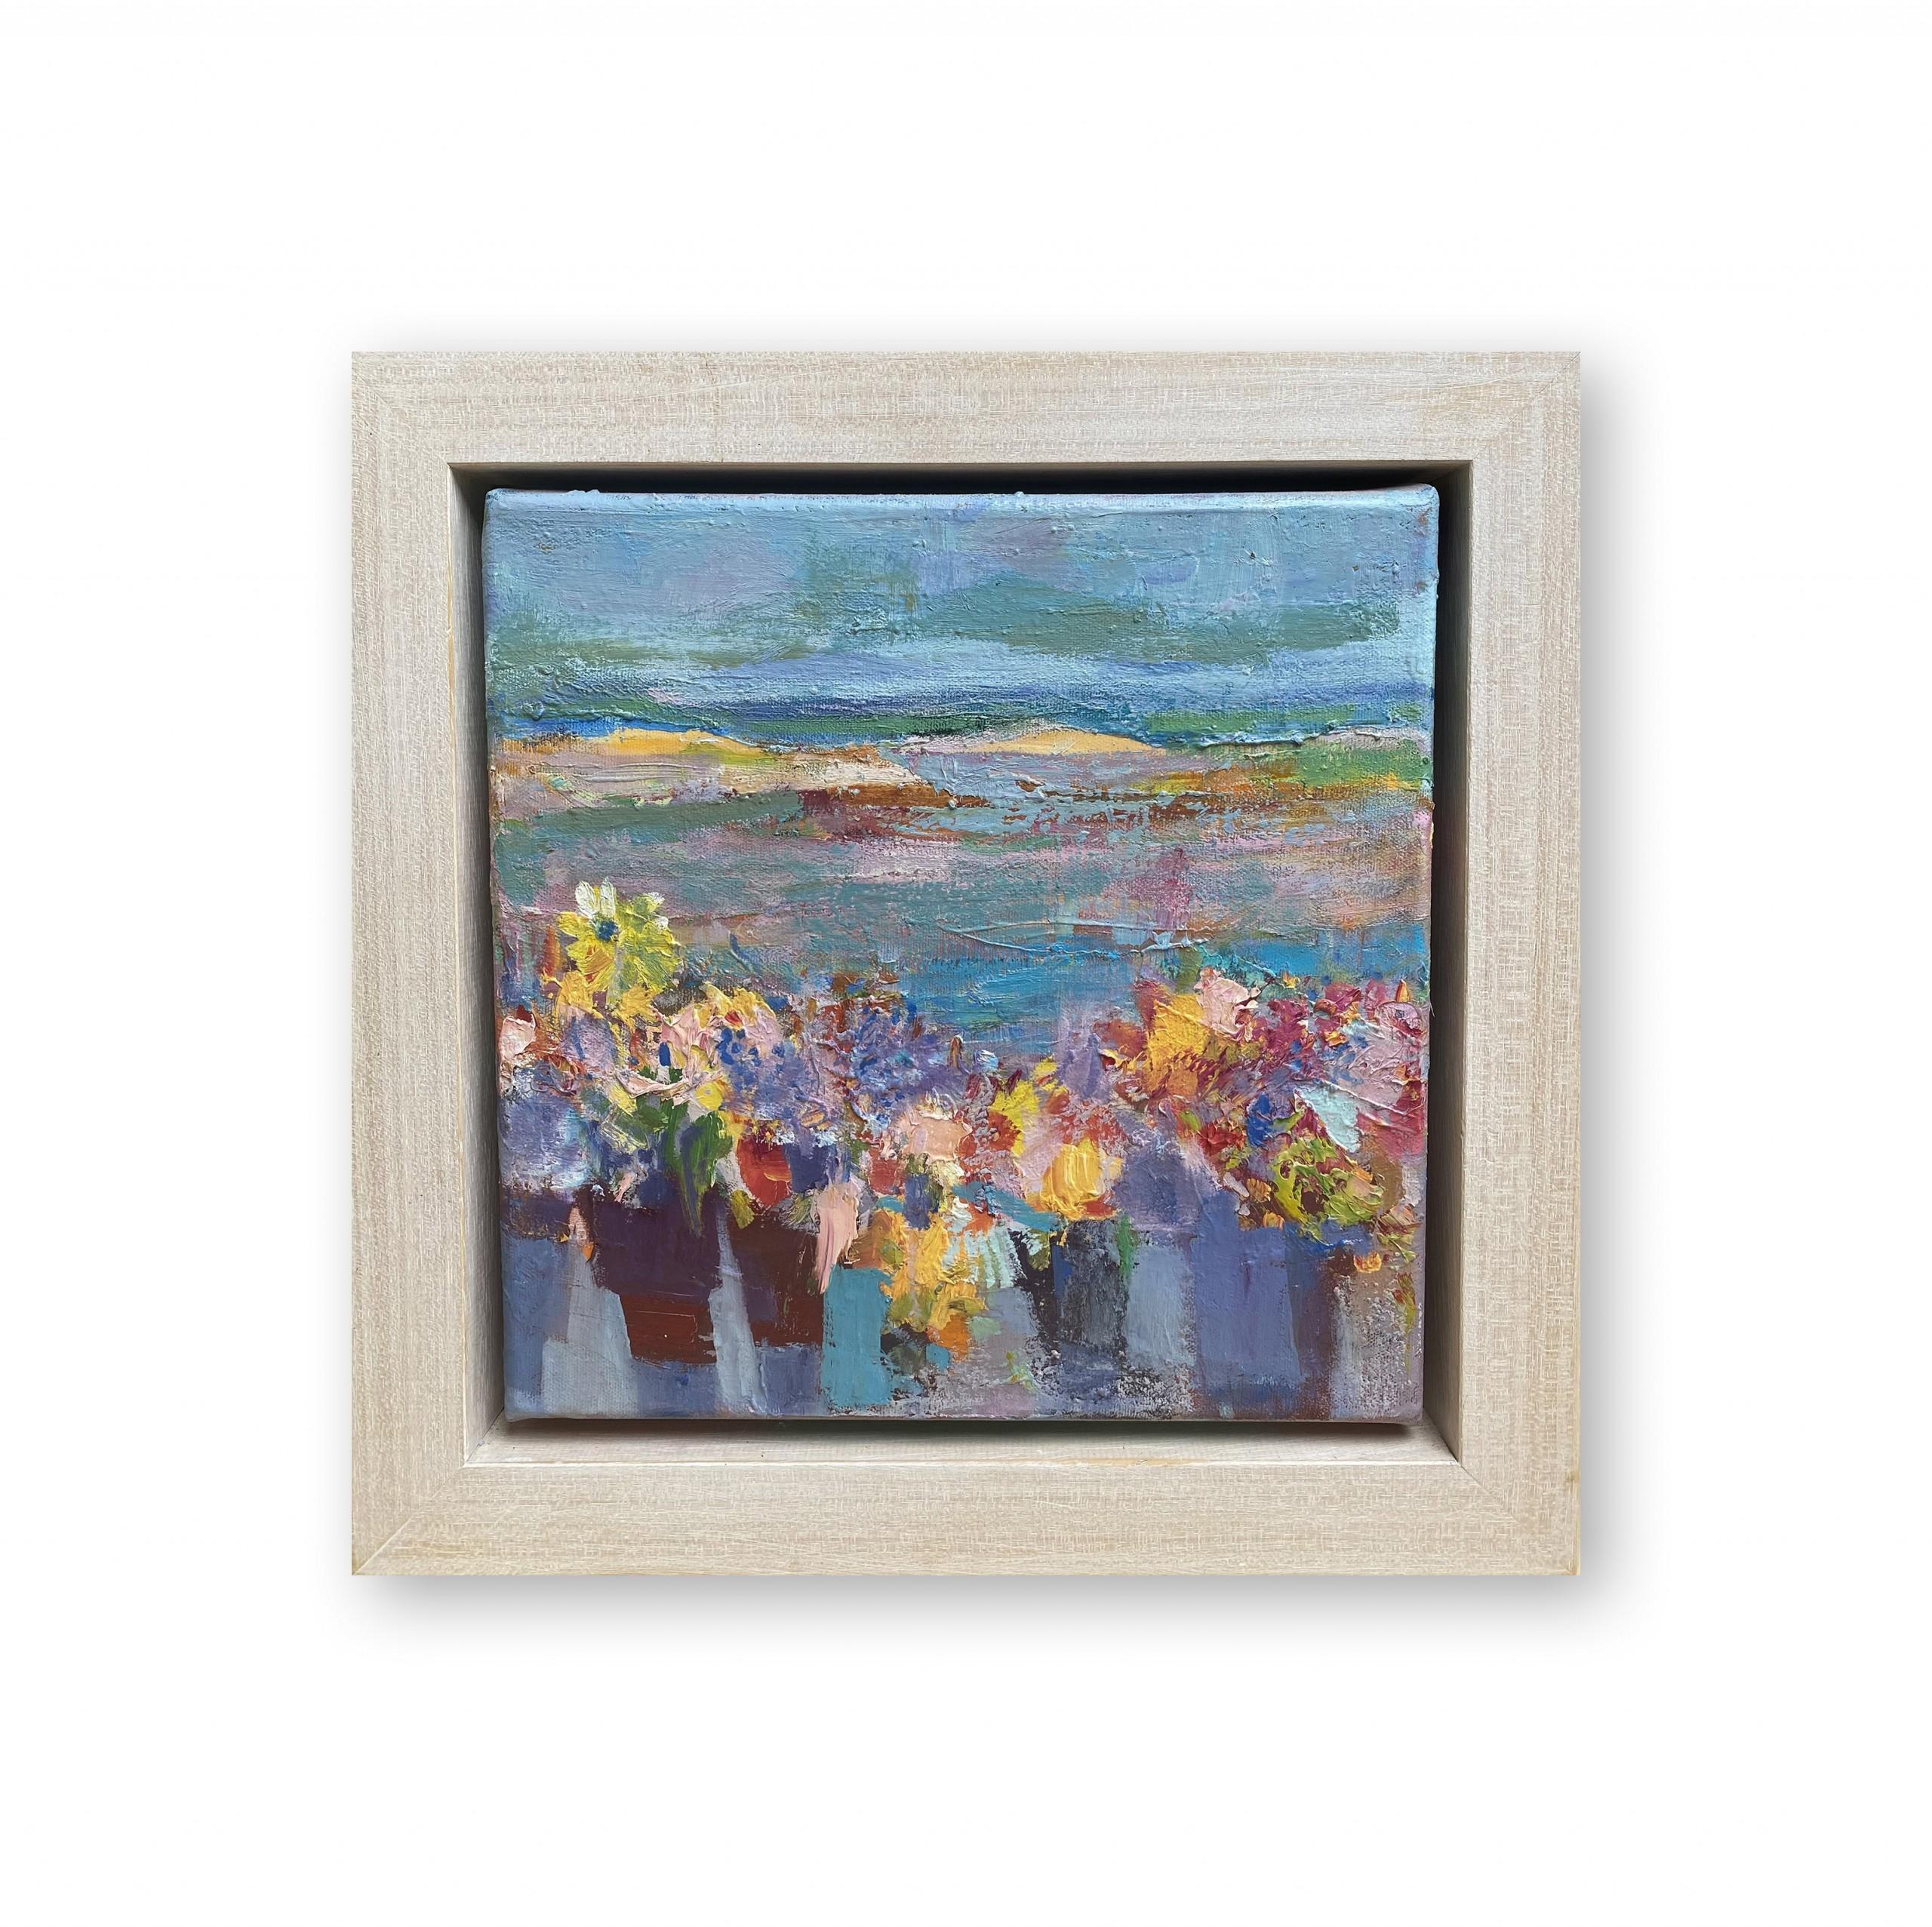 Stillleben von Estuary, halb-abstrakte geblümte Kunstwerke, lebhaftes Blumengemälde (Abstrakt), Painting, von Teresa Pemberton